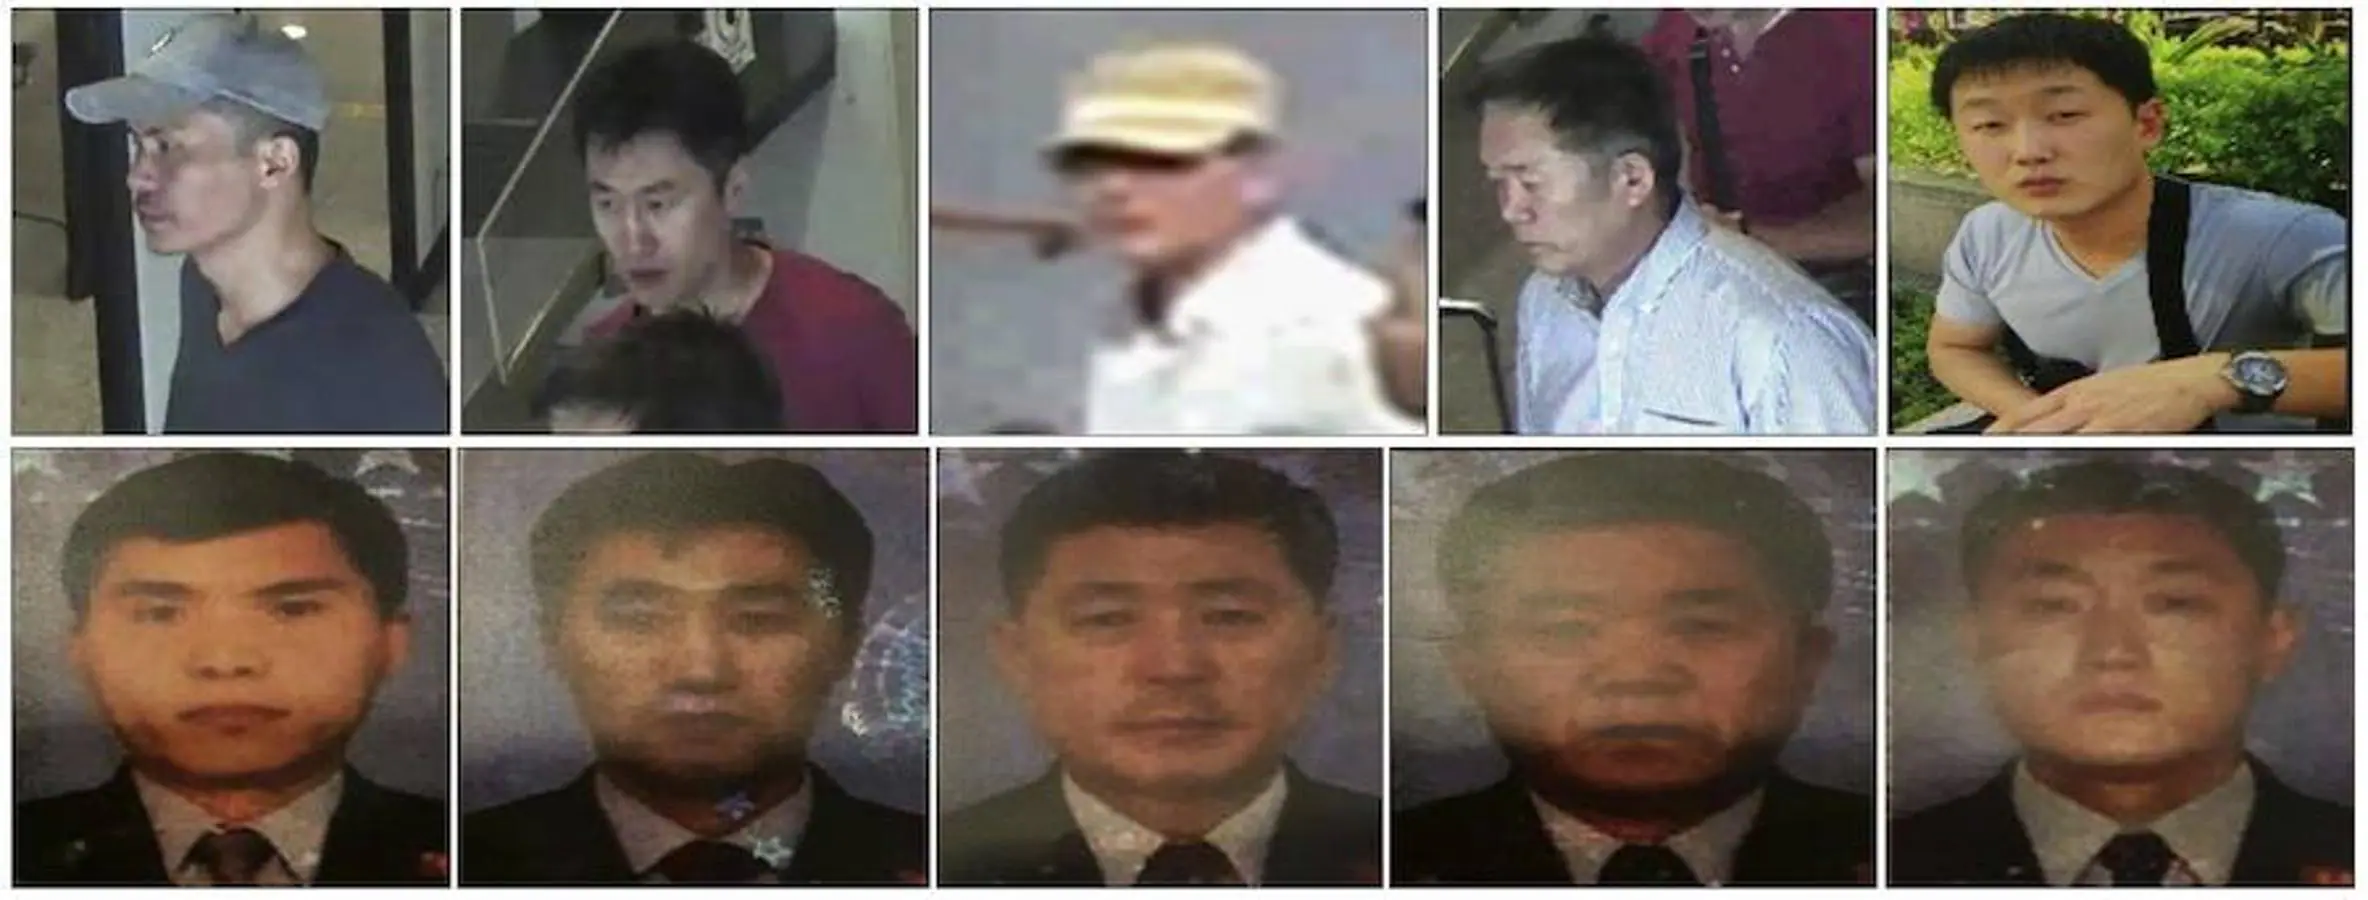 Cinco sospechosos buscados por la policía: son los ciudadanos norcoreanos (i-d fila de arriba) Ri Ji Hyon, Hong Song Hac, O Jong Gil, Ri Jae Nam y Ri Ji U junto a sus respectivas fotografías de pasaporte